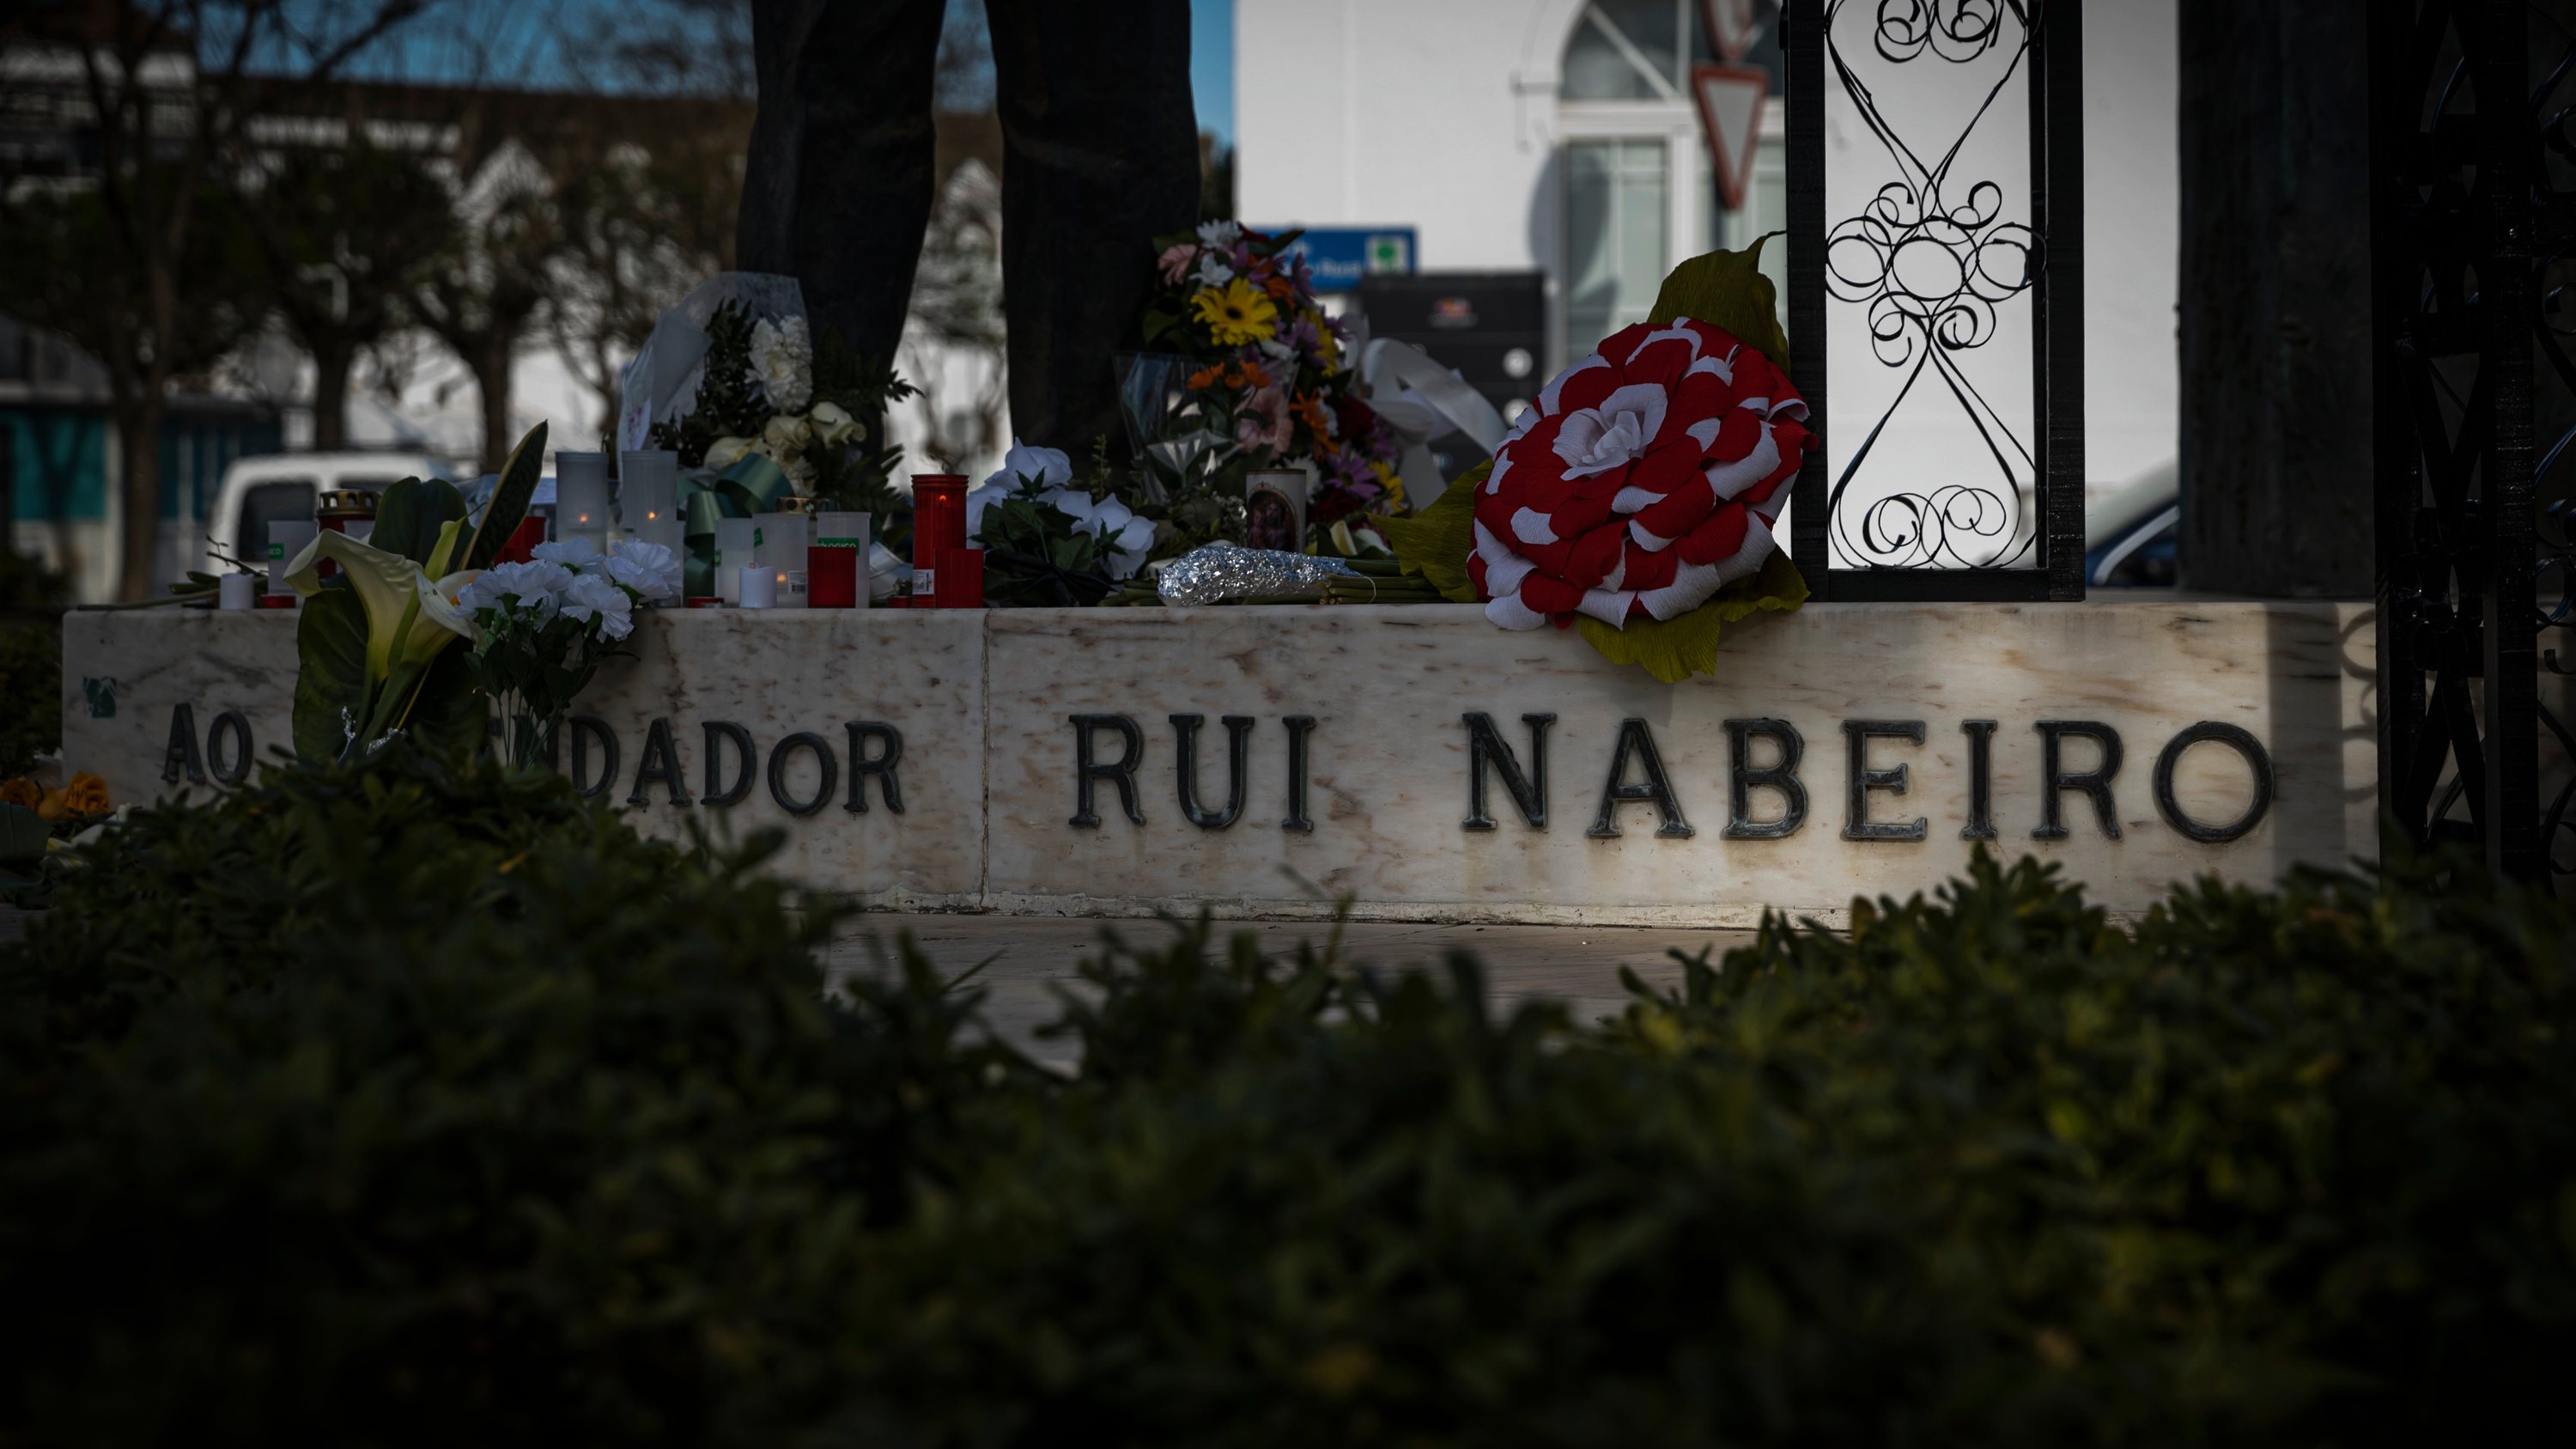 Para evocar o fundador do Grupo Nabeiro — Delta Cafés, está a ser preparada uma homenagem naquela vila alentejana, precisamente no dia em que vai ser assinalado o primeiro aniversário da sua morte, no dia 19 de março, terça-feira